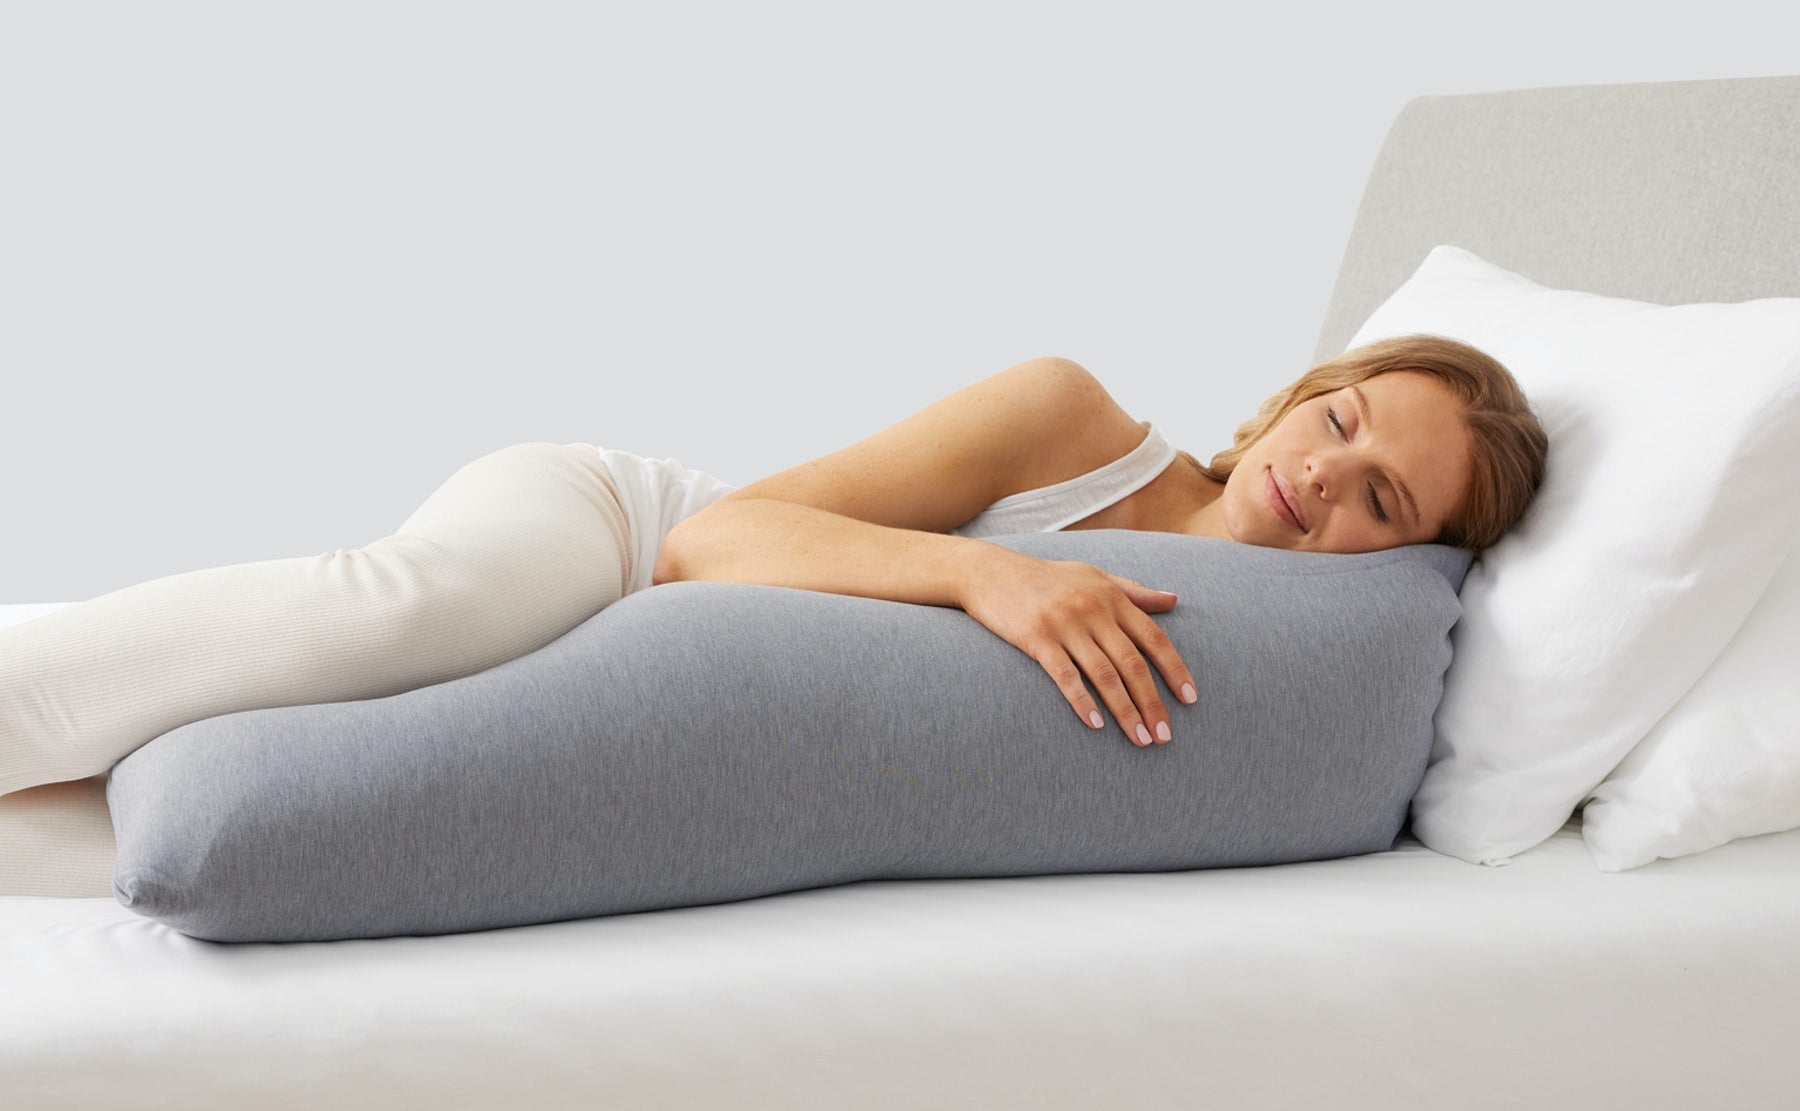 Coop Home Goods Maternity Pillow - Memory Foam Body Pillow for Pregnancy,  Side Sleeper Body Pillow, Full Body Pillow for Sleeping (White)